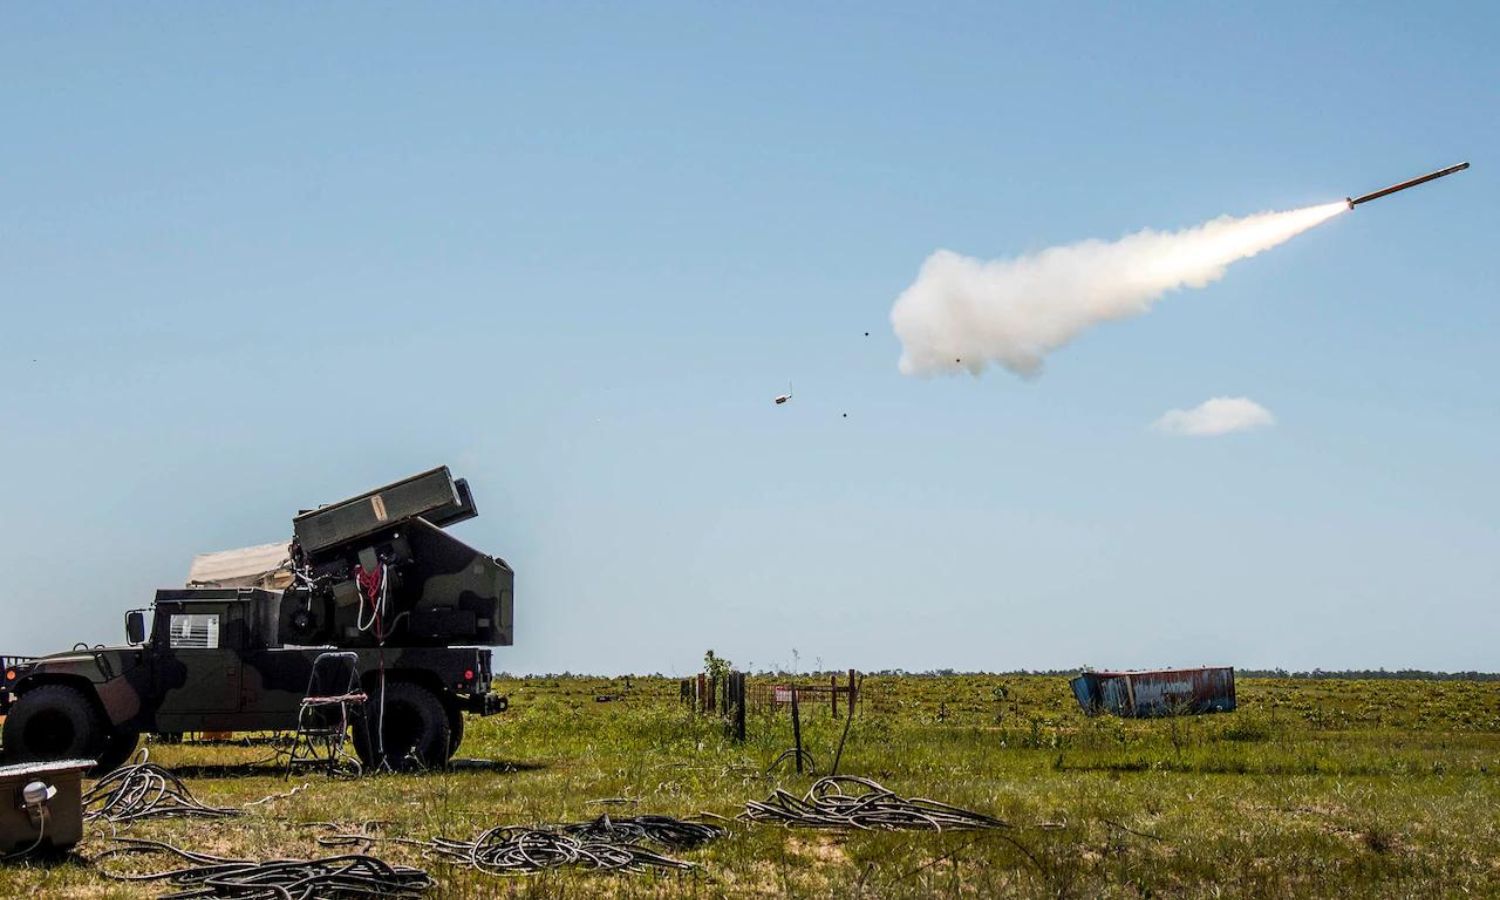 إطلاق صاروخ "ستينغر" من مركبة تابعة للجيش الأمريكي في نطاق قاعدة "إيجلين" الجوية- 20 من نيسان 2017 (وزارة الدفاع الأمريكية)